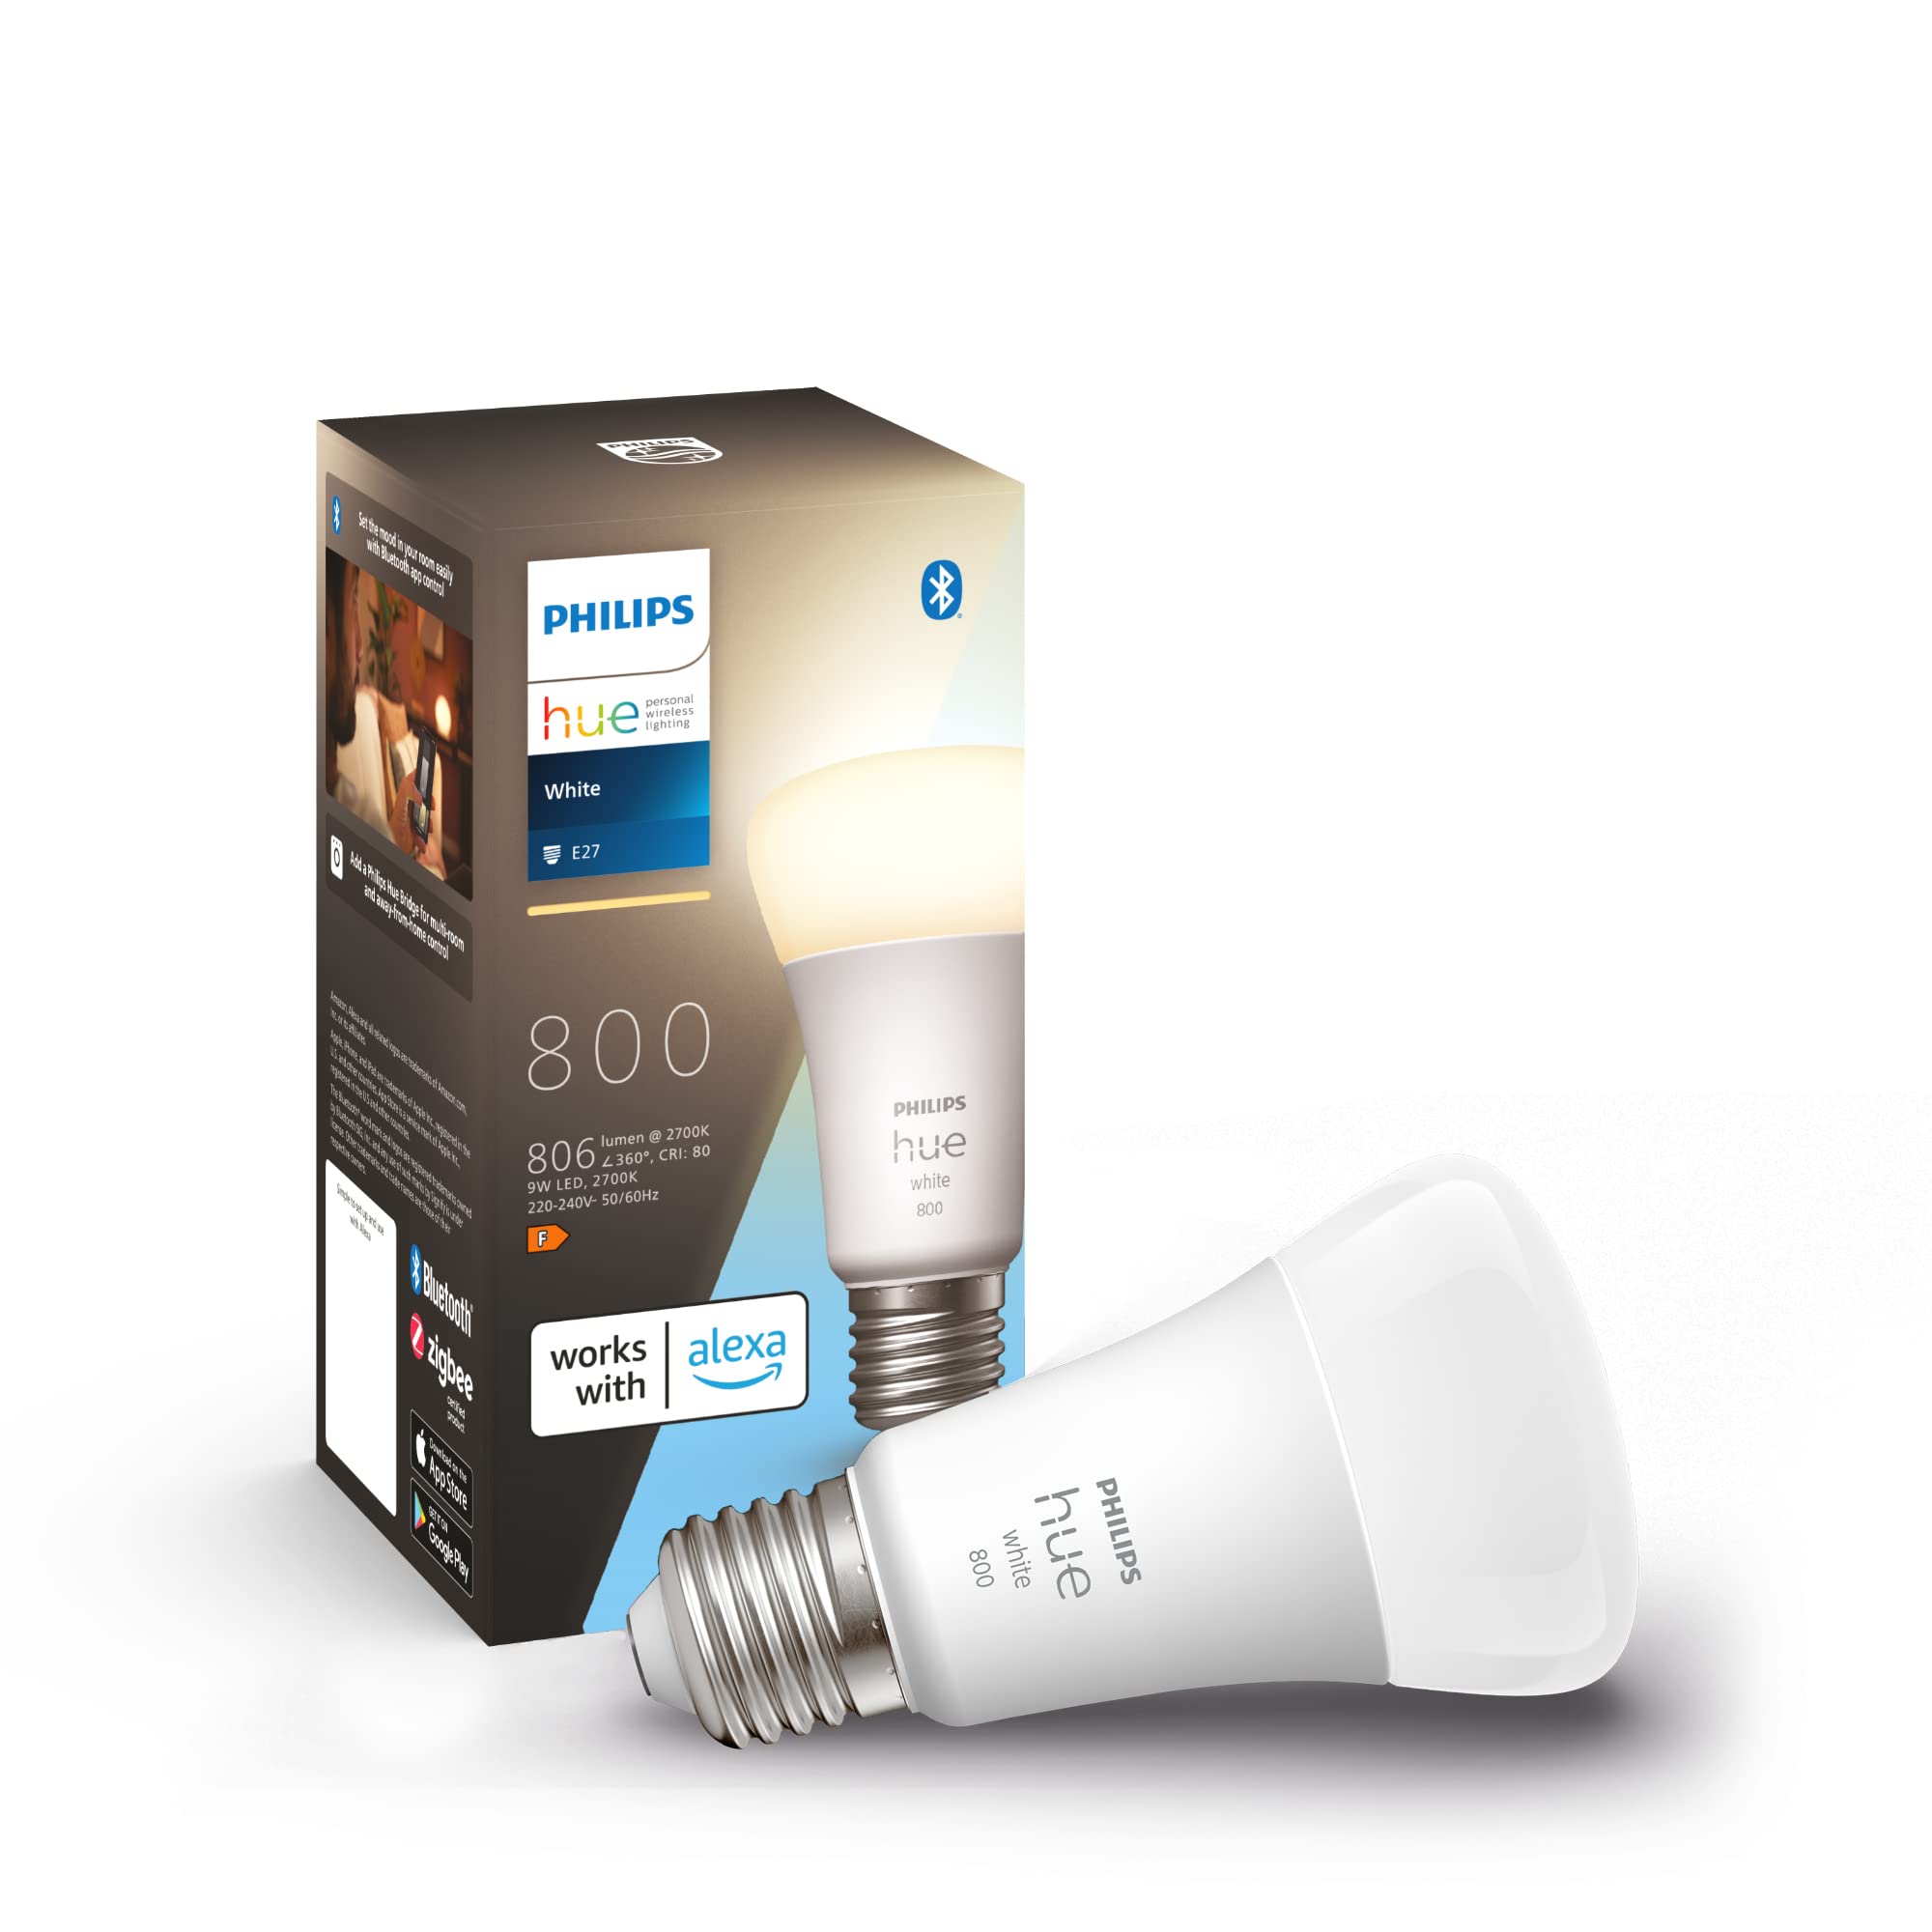 soldes Philips Hue White, ampoule connectée LED E27, 806 lumen, compatible Bluetooth, fonctionne avec Alexa mCMAvrv0p boutique en ligne